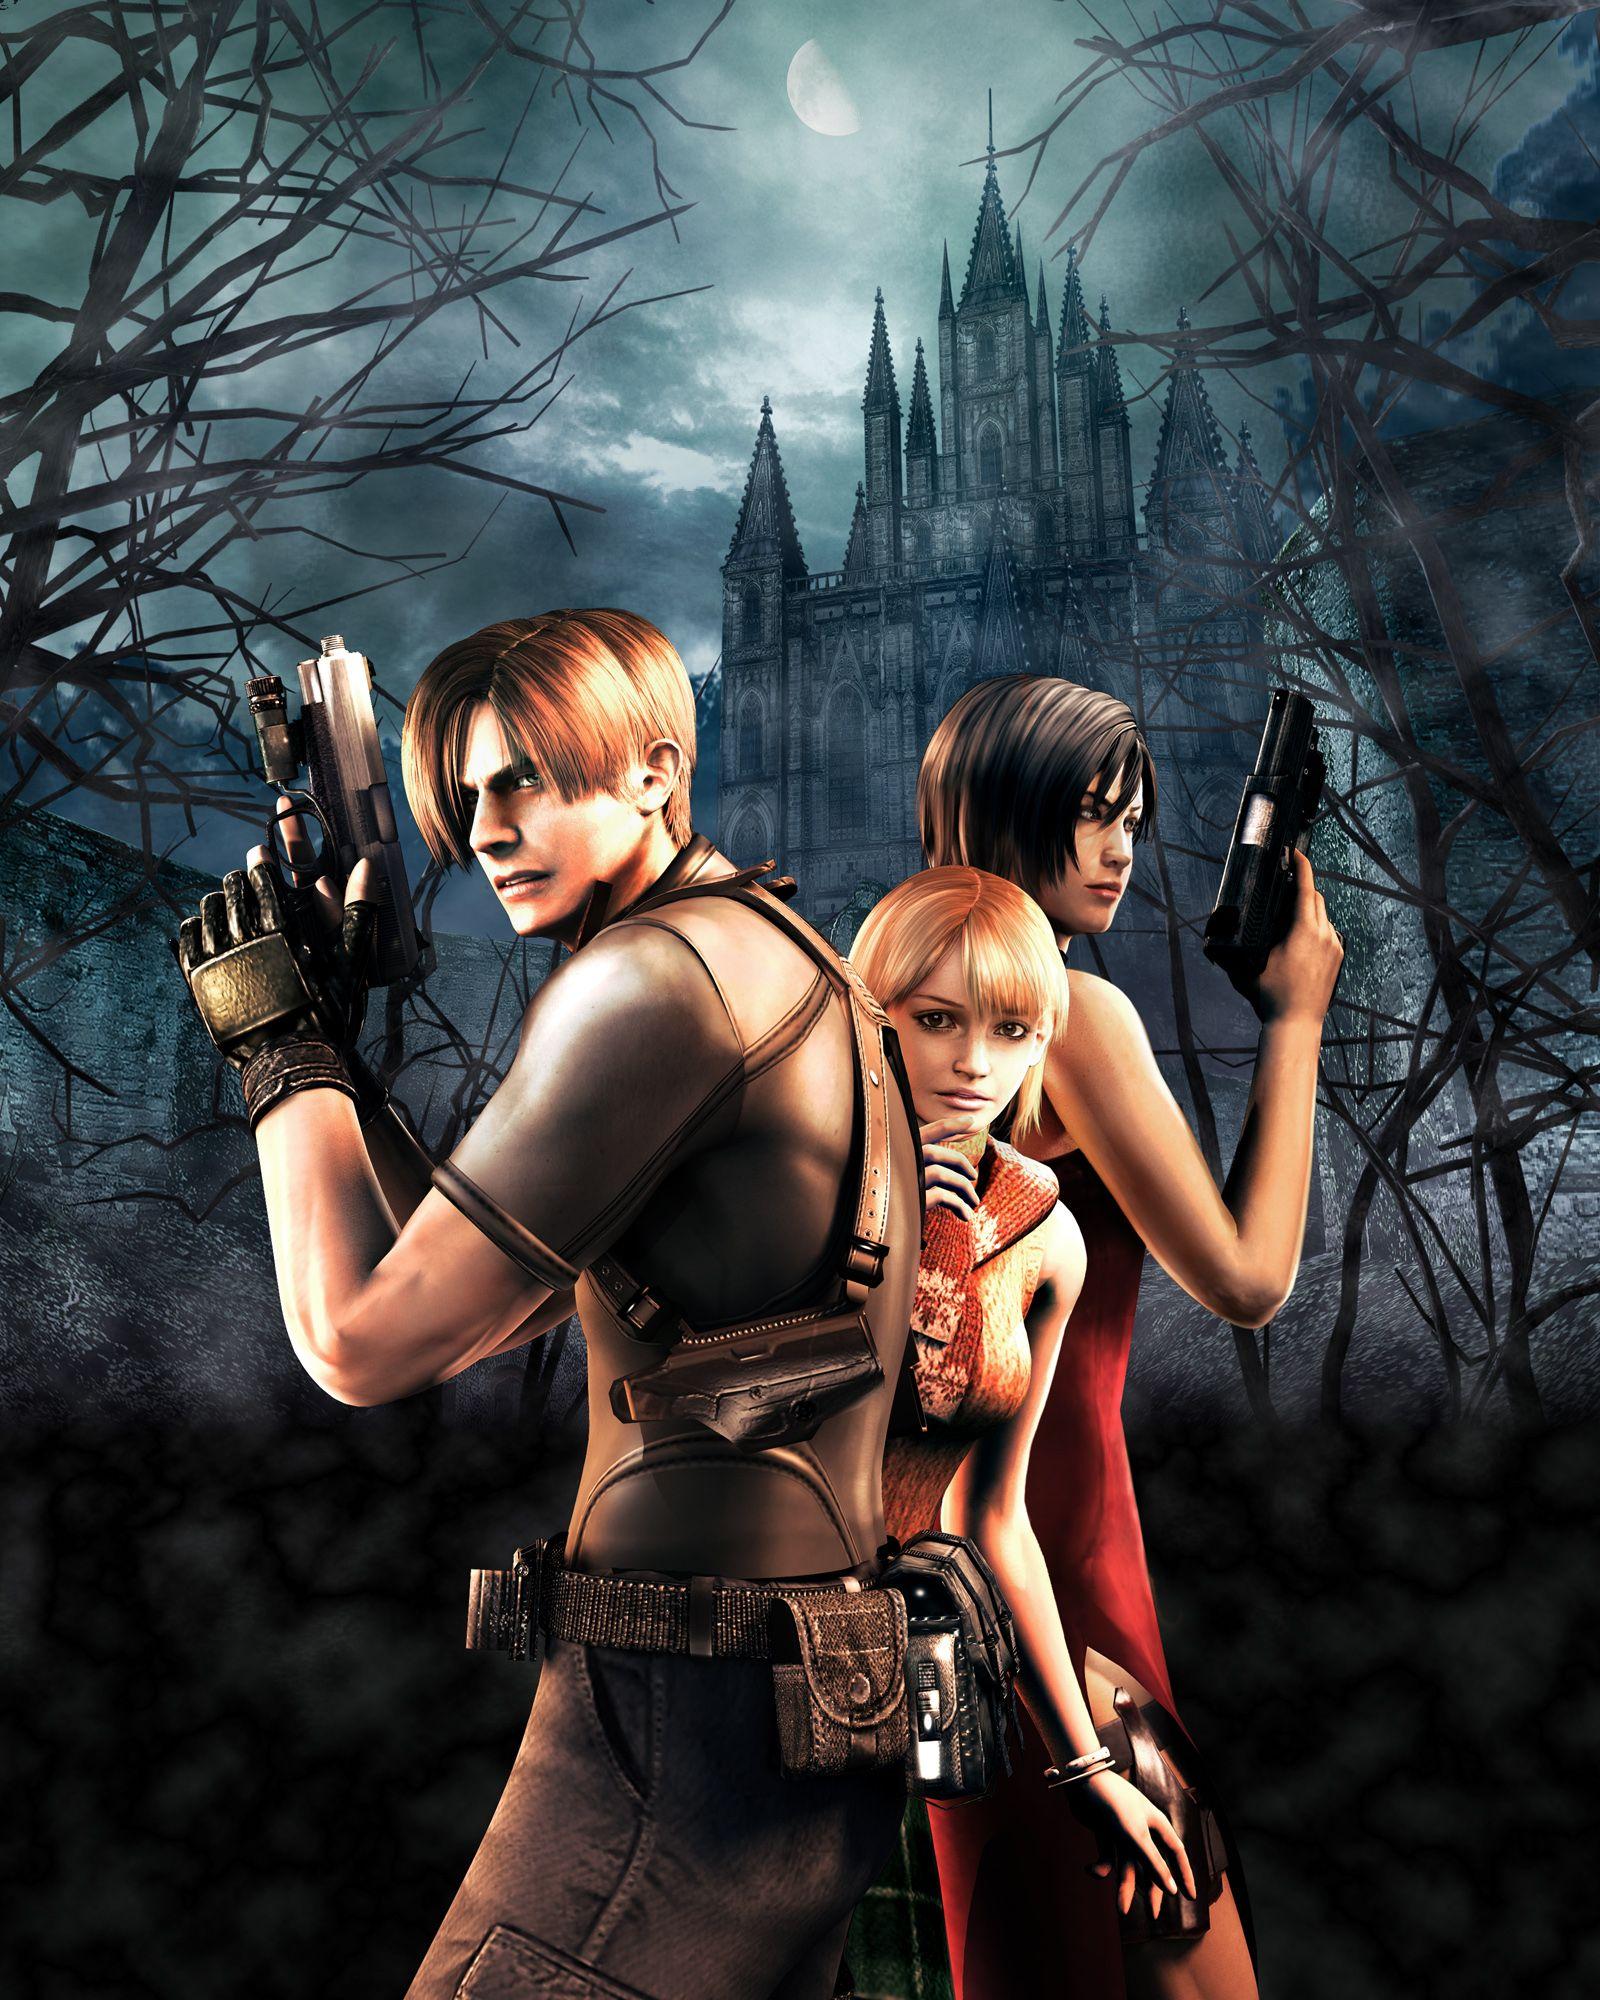 Resident Evil 4 Ashley Poster 4K Wallpaper Wall Art Decor 